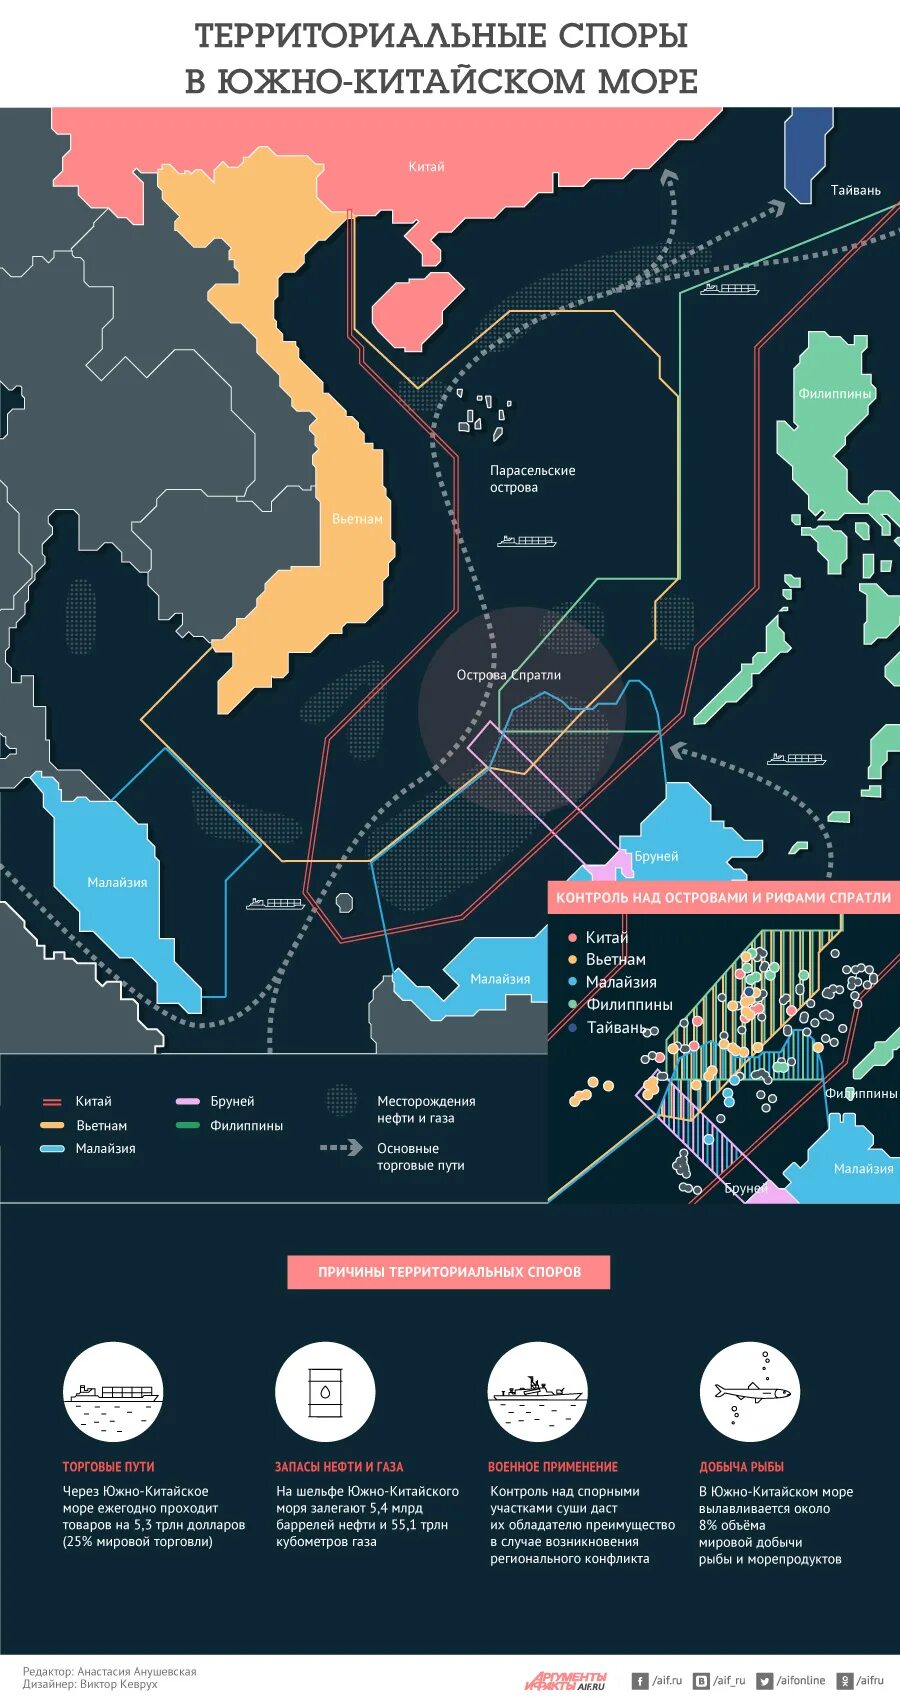 Современные территориальные споры. Спорные территории Китая в Южно-китайском море. Территориальный спор в Южно-китайском море. Спорные территории в Южно китайском море на карте. Территориальные претензии в Южно китайском море.